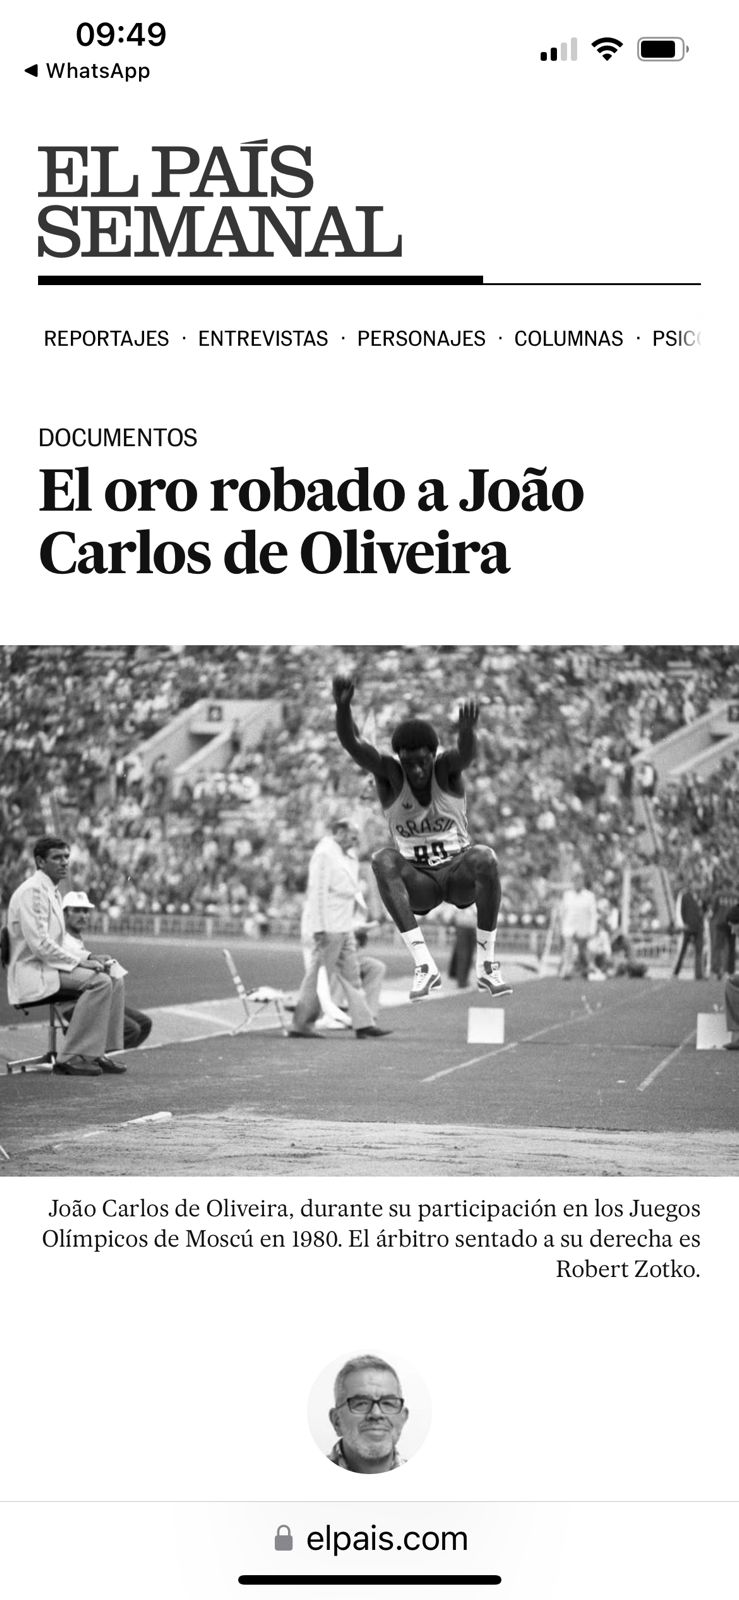 28/11 - Presidente da Confederação Espanhola de Atletismo reverencia João do Pulo, cumprimenta e apoia Pindamonhangaba pela Política de Reparação